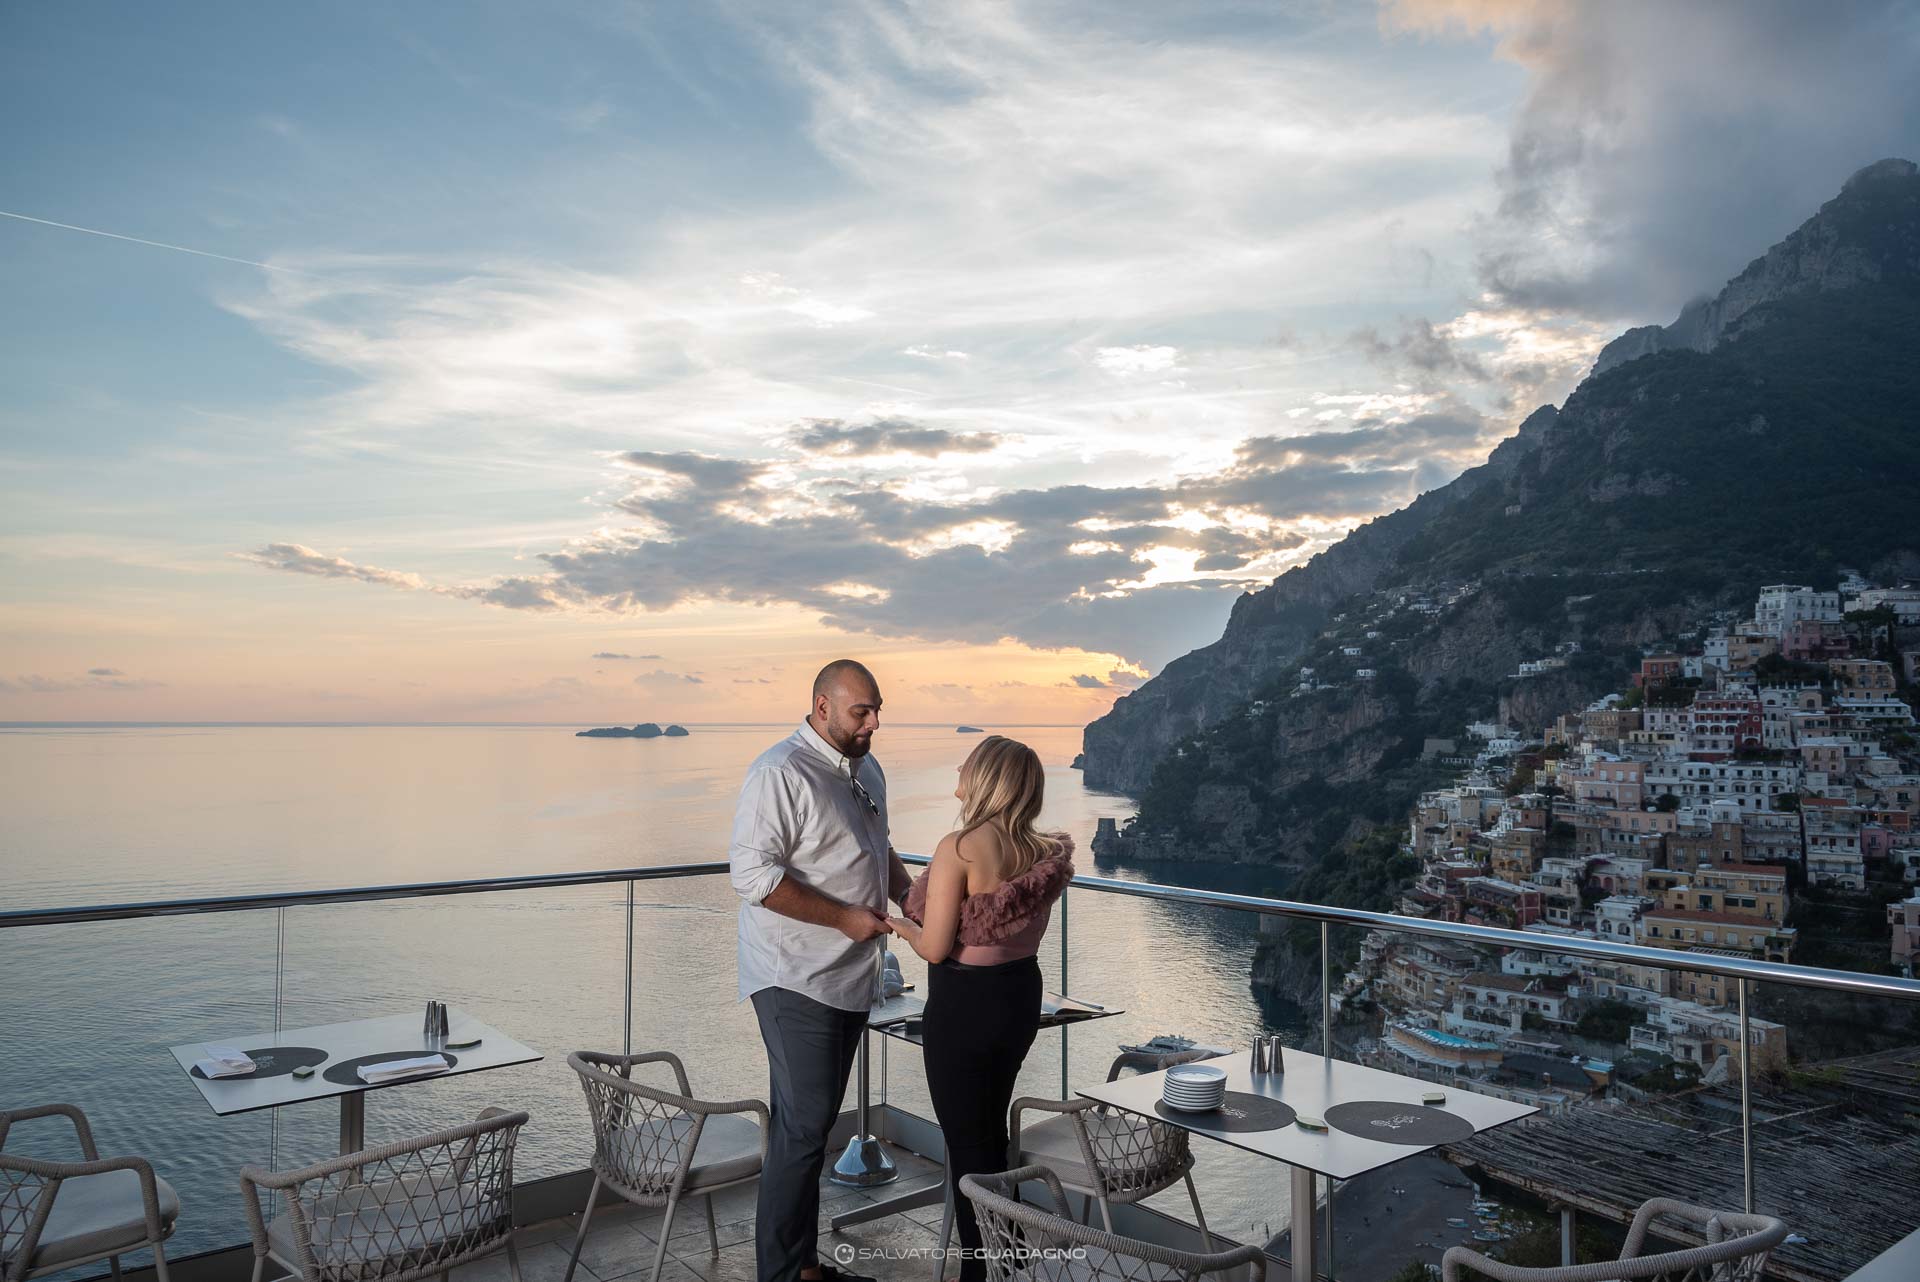 Wedding - Marriage proposal - Portrait photography - Positano - Amalfi Coast 